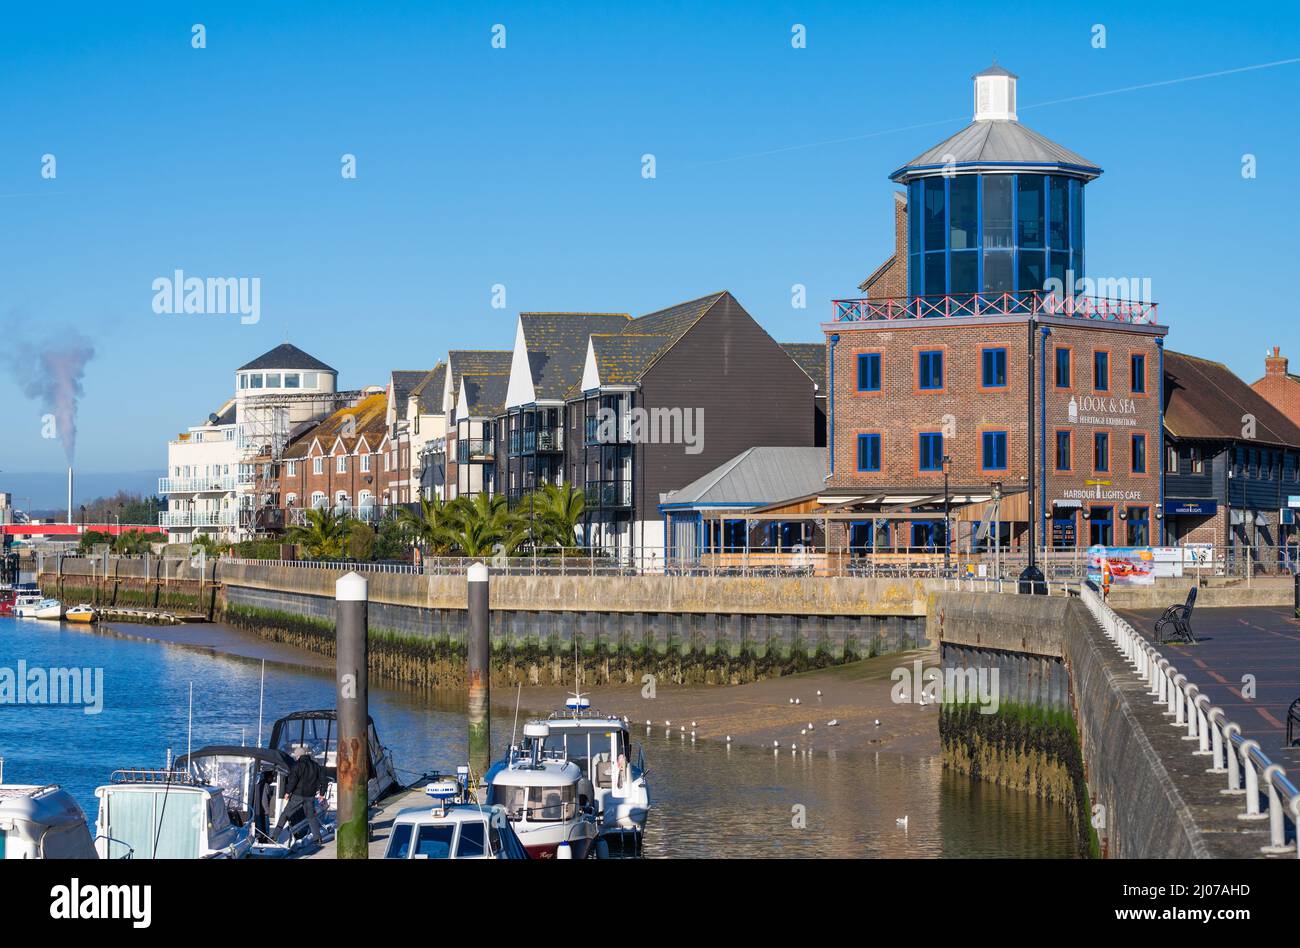 Blick auf die Häuser am Flussufer und das Besucherzentrum von Look & Sea mit Booten, die auf einem Ponton am Fluss Arun in Littlehampton, West Sussex, Großbritannien, festgemacht sind. Stockfoto